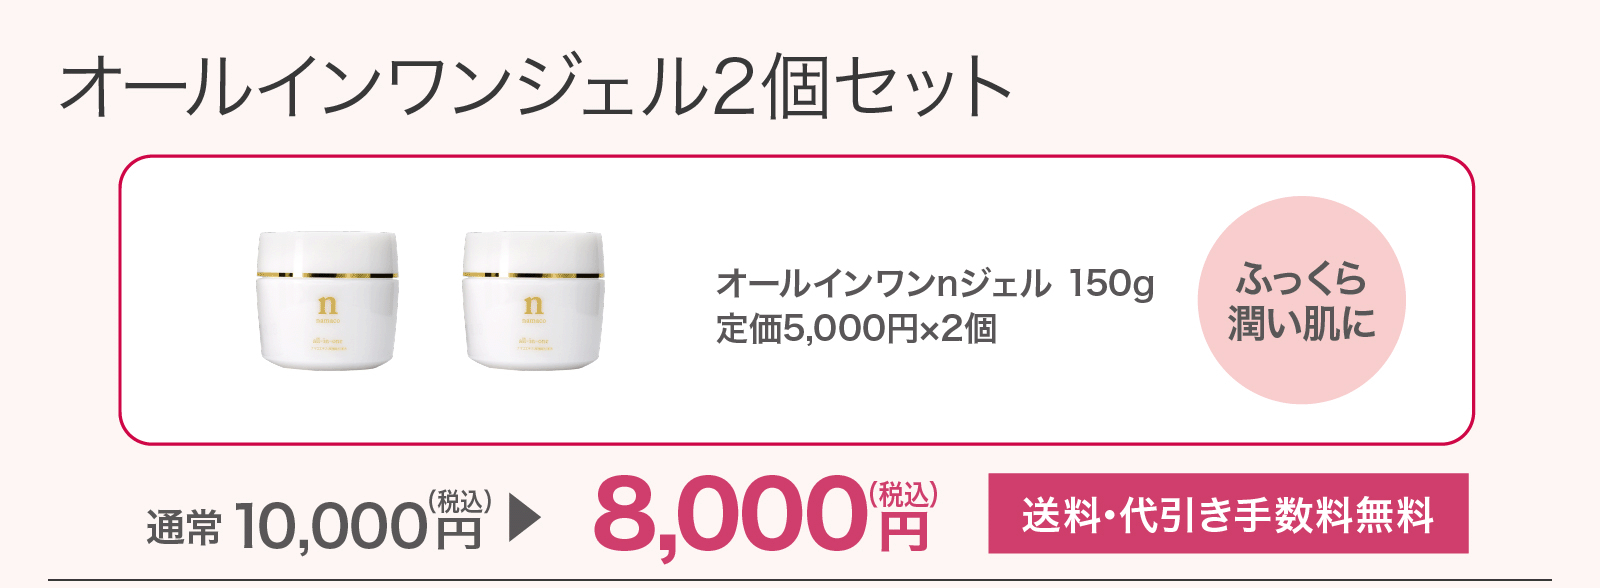 【SALE】オールインワンジェル2個セット 8,000円